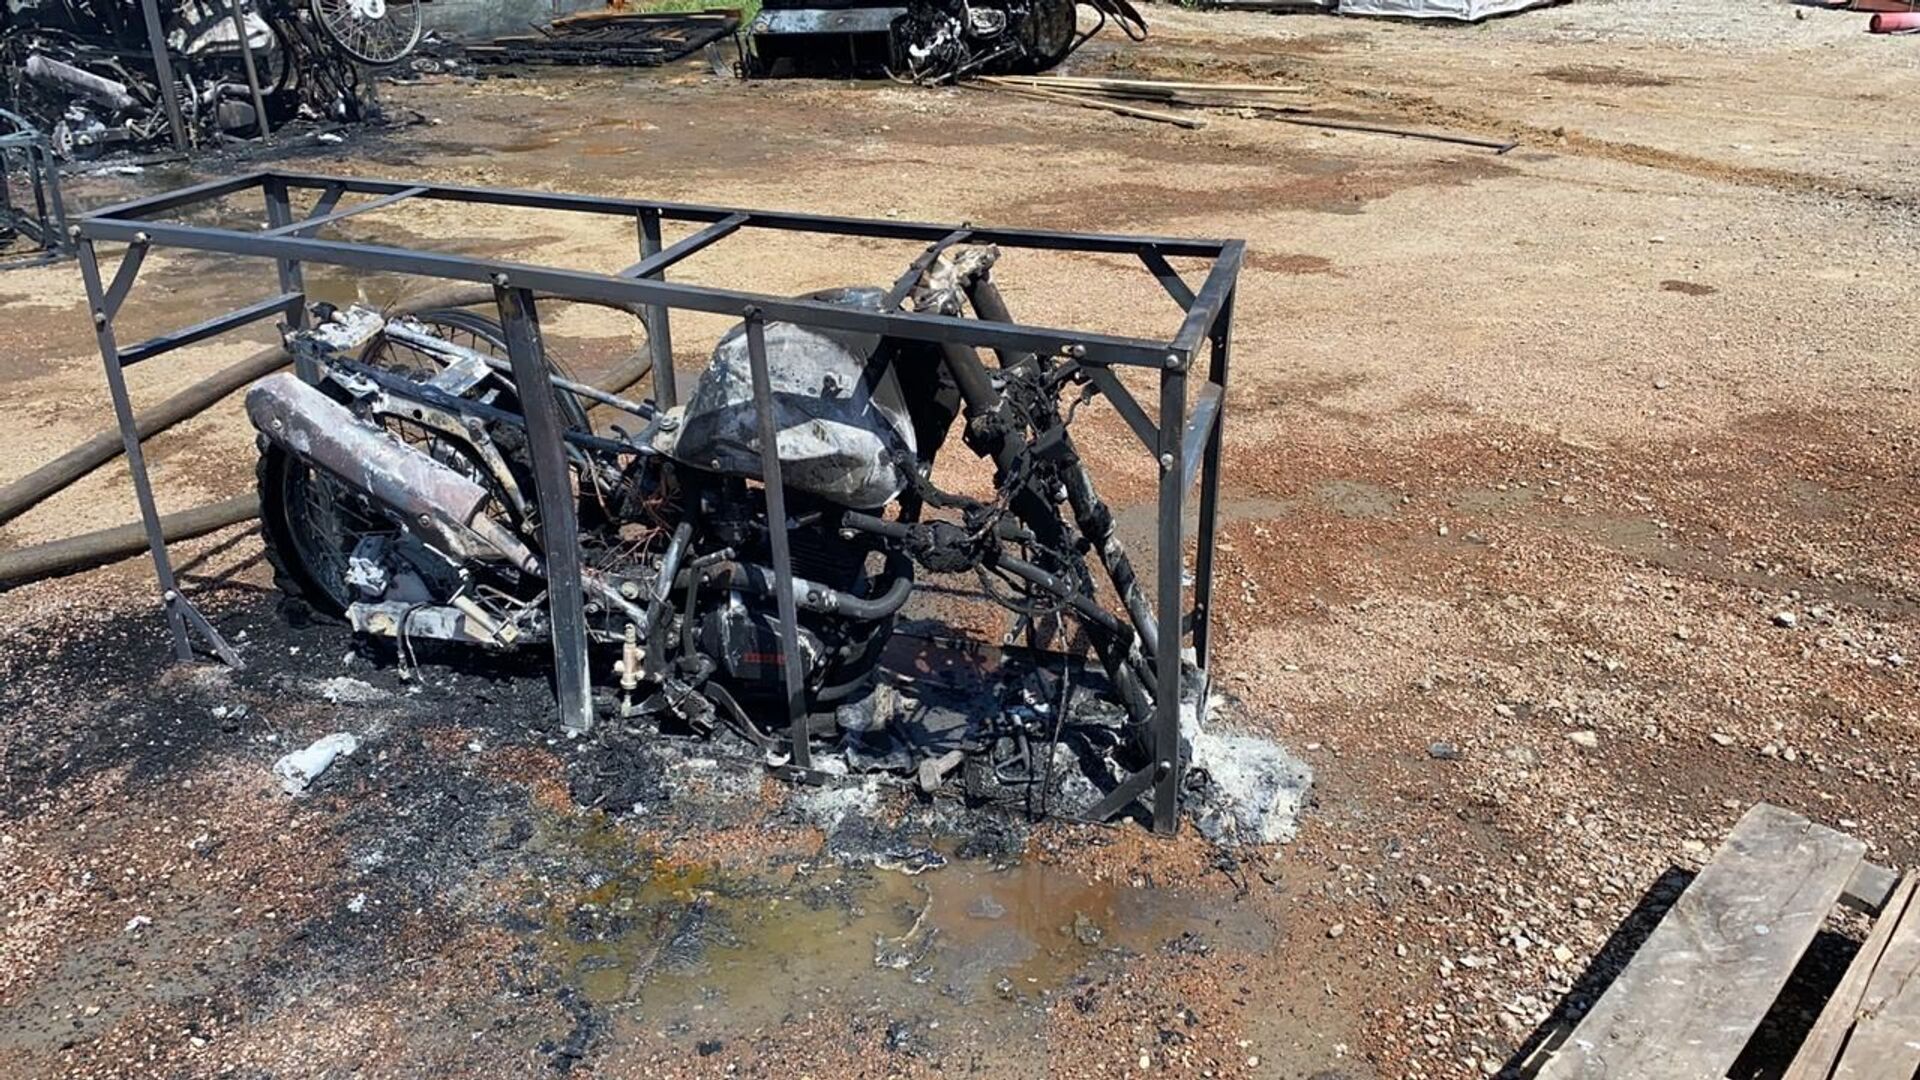 Свыше 30 мотоциклов сгорели при пожаре в Нур-Султане - Sputnik Казахстан, 1920, 08.06.2021